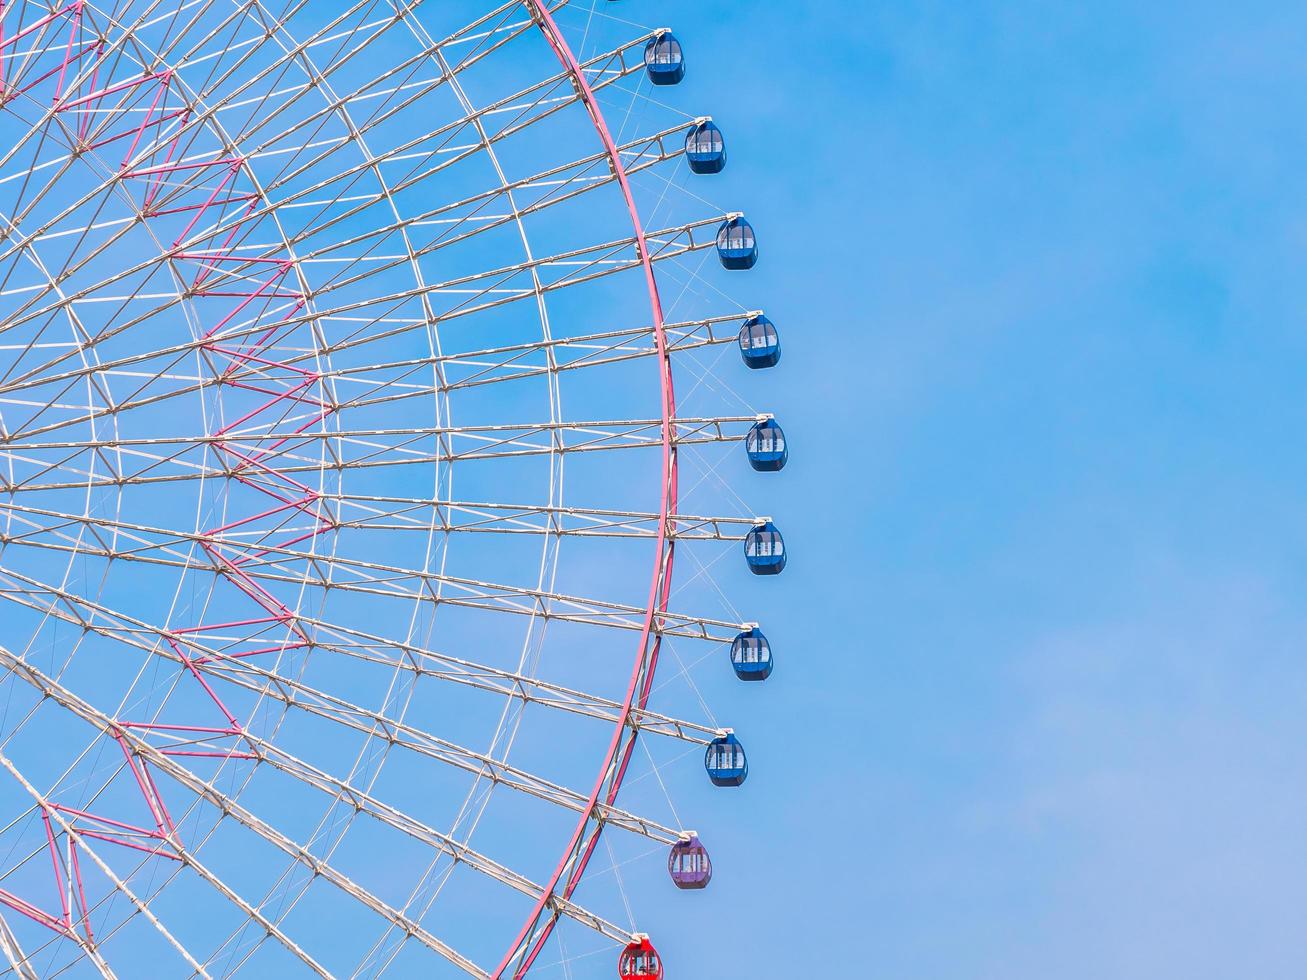 grande roue dans le parc avec fond de ciel bleu photo